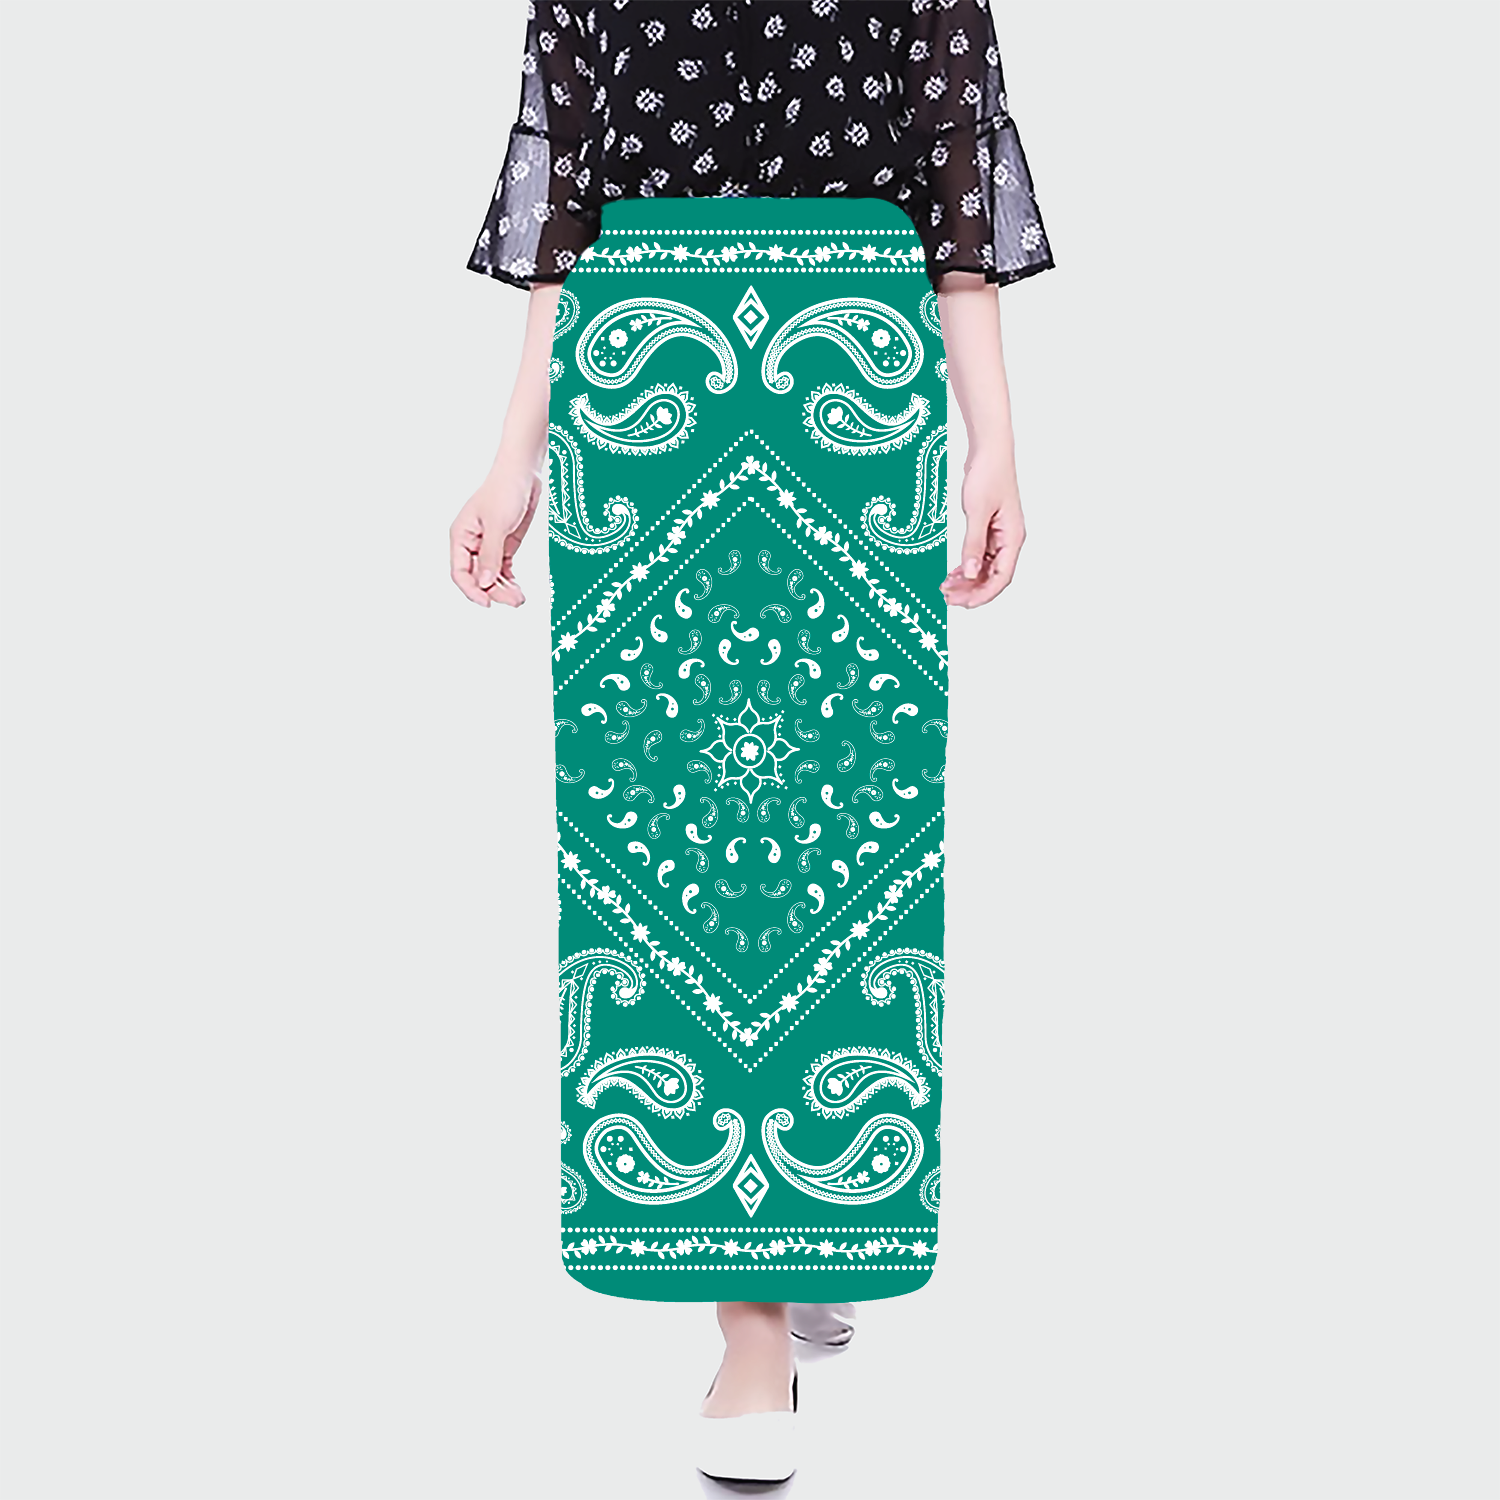 váy chống nắng thời trang cao cấp đẹp phuongqueen  PHƯƠNG QUEEN